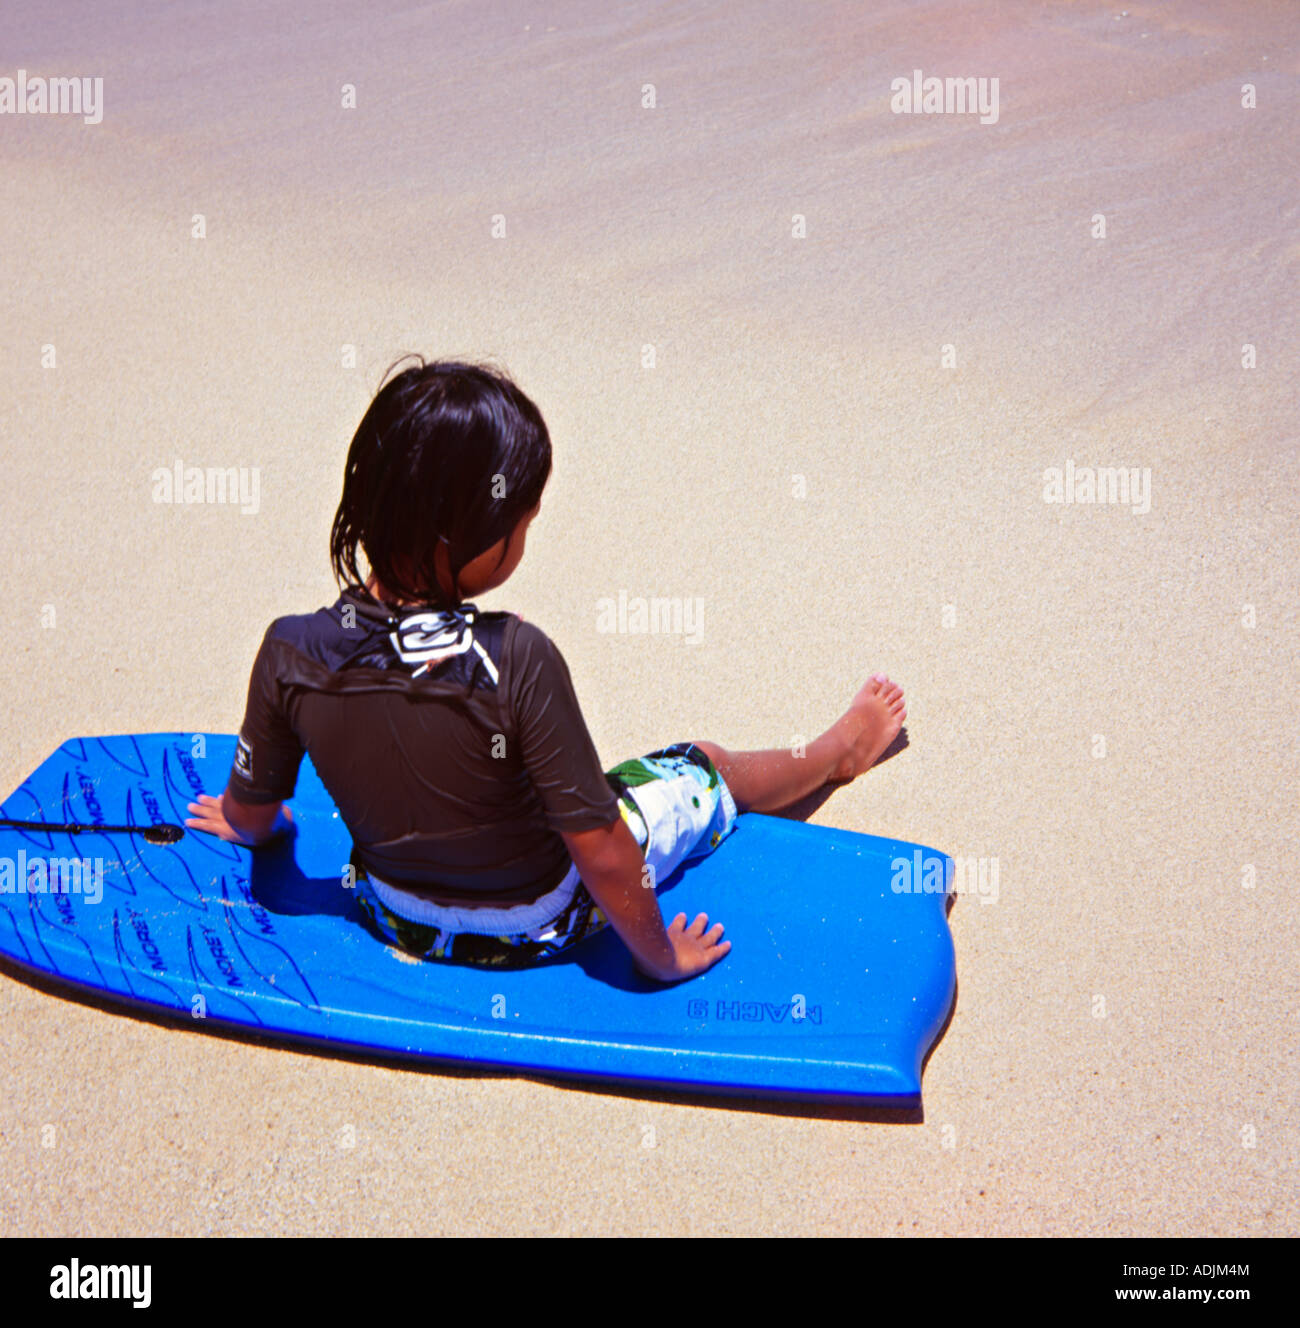 Little Girl on Boggie Board, Waikiki beach, Oahu, Hawaii Stock Photo